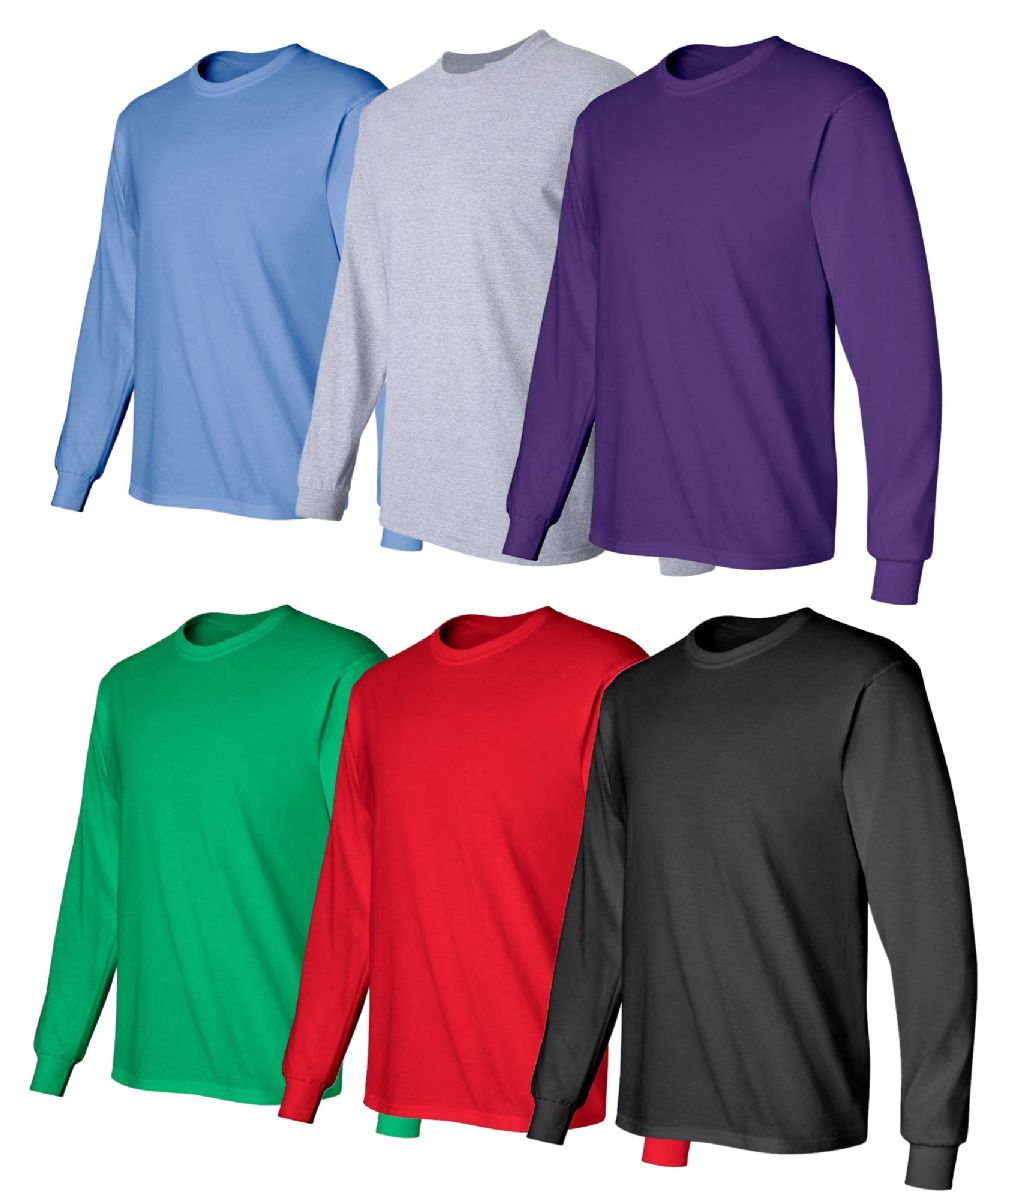 6 Wholesale Billionhats Mens Assorted Color Long Sleeve T-Shirt Size 4xlarge